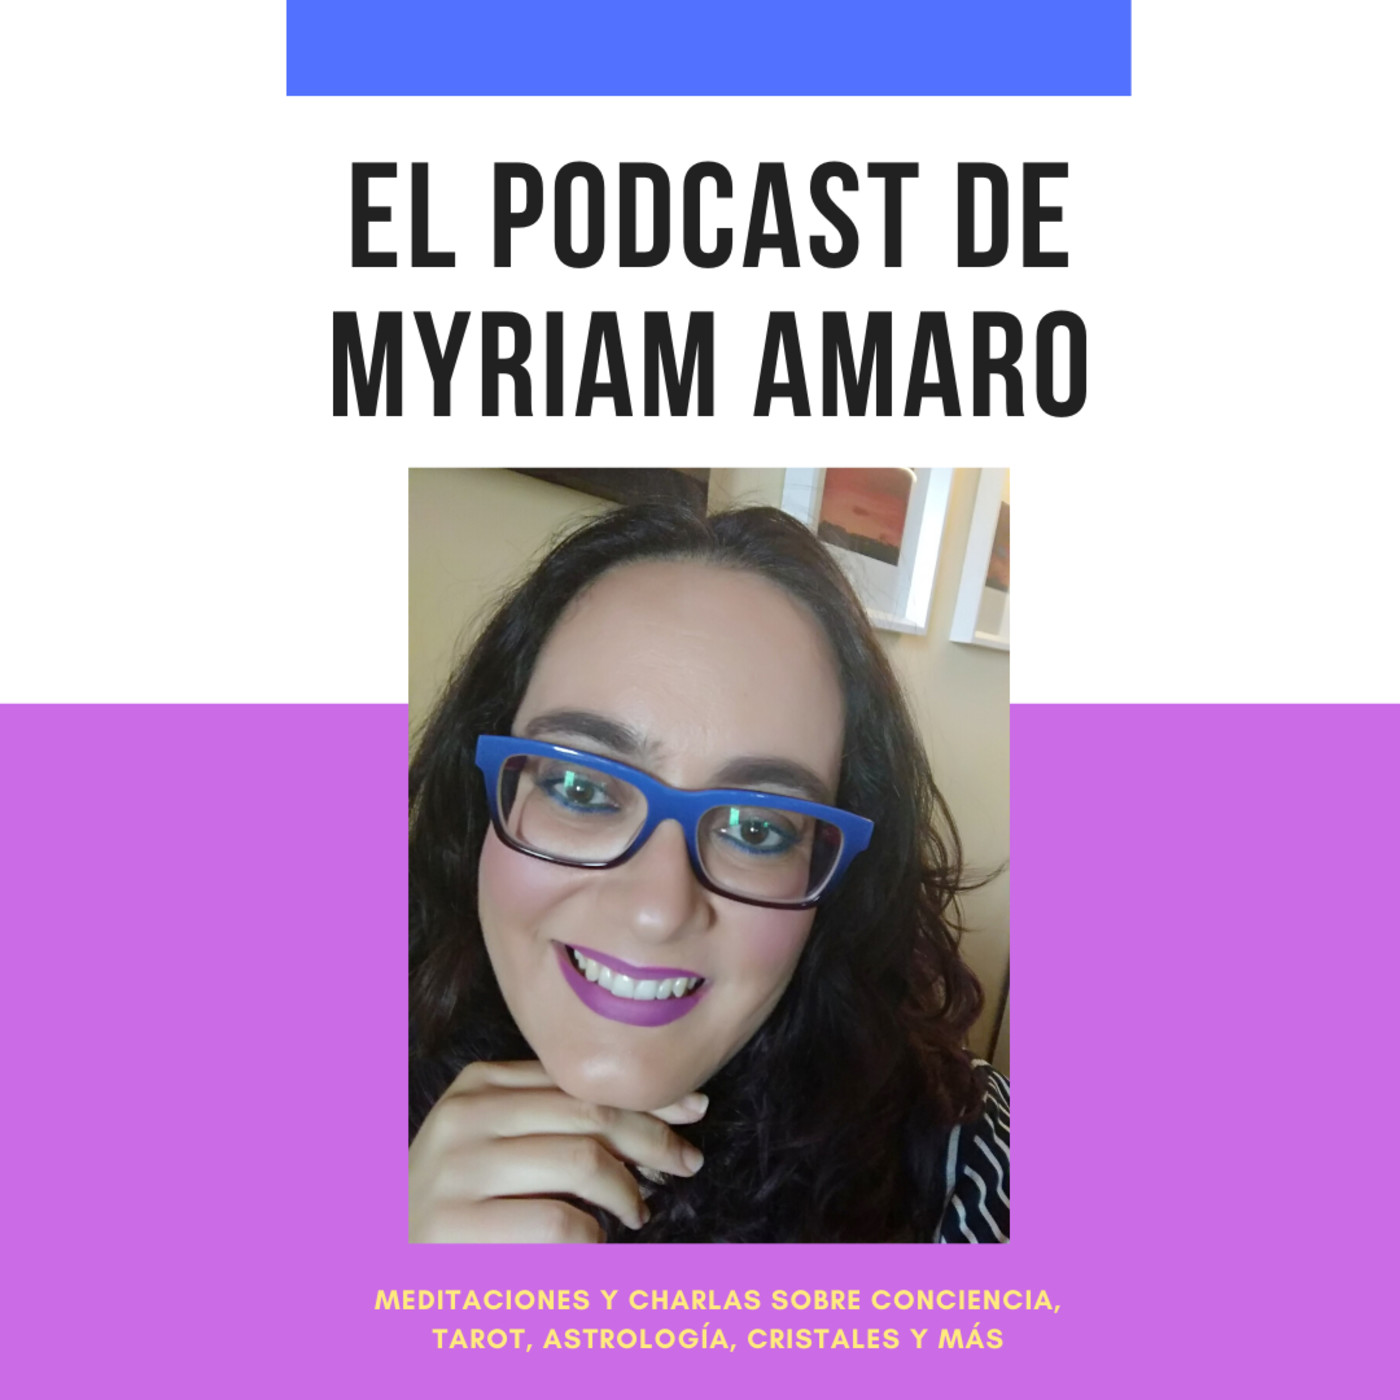 El podcast de Myriam Amaro